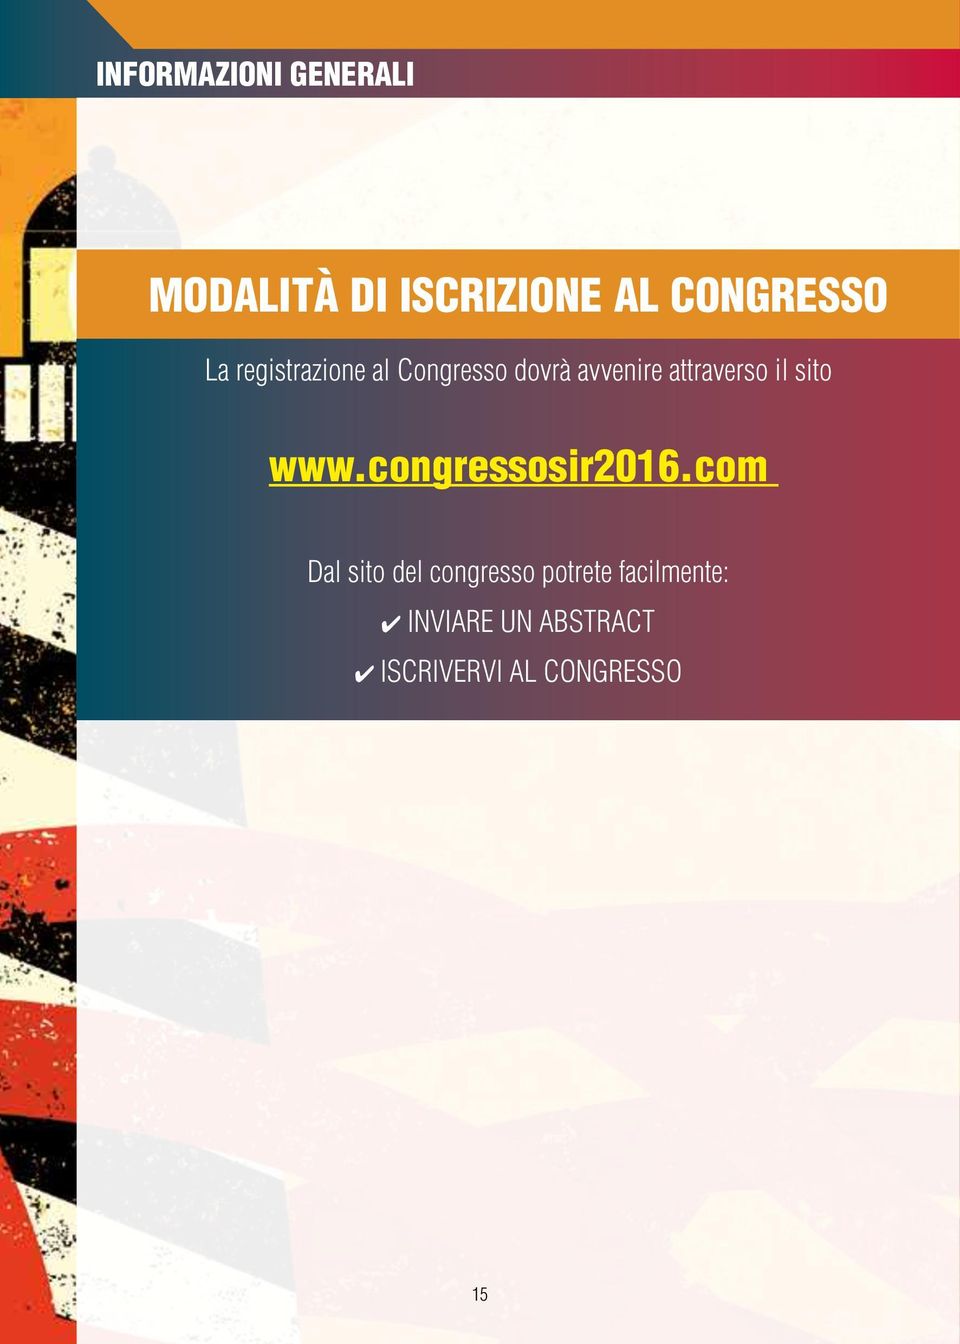 sito www.congressosir2016.